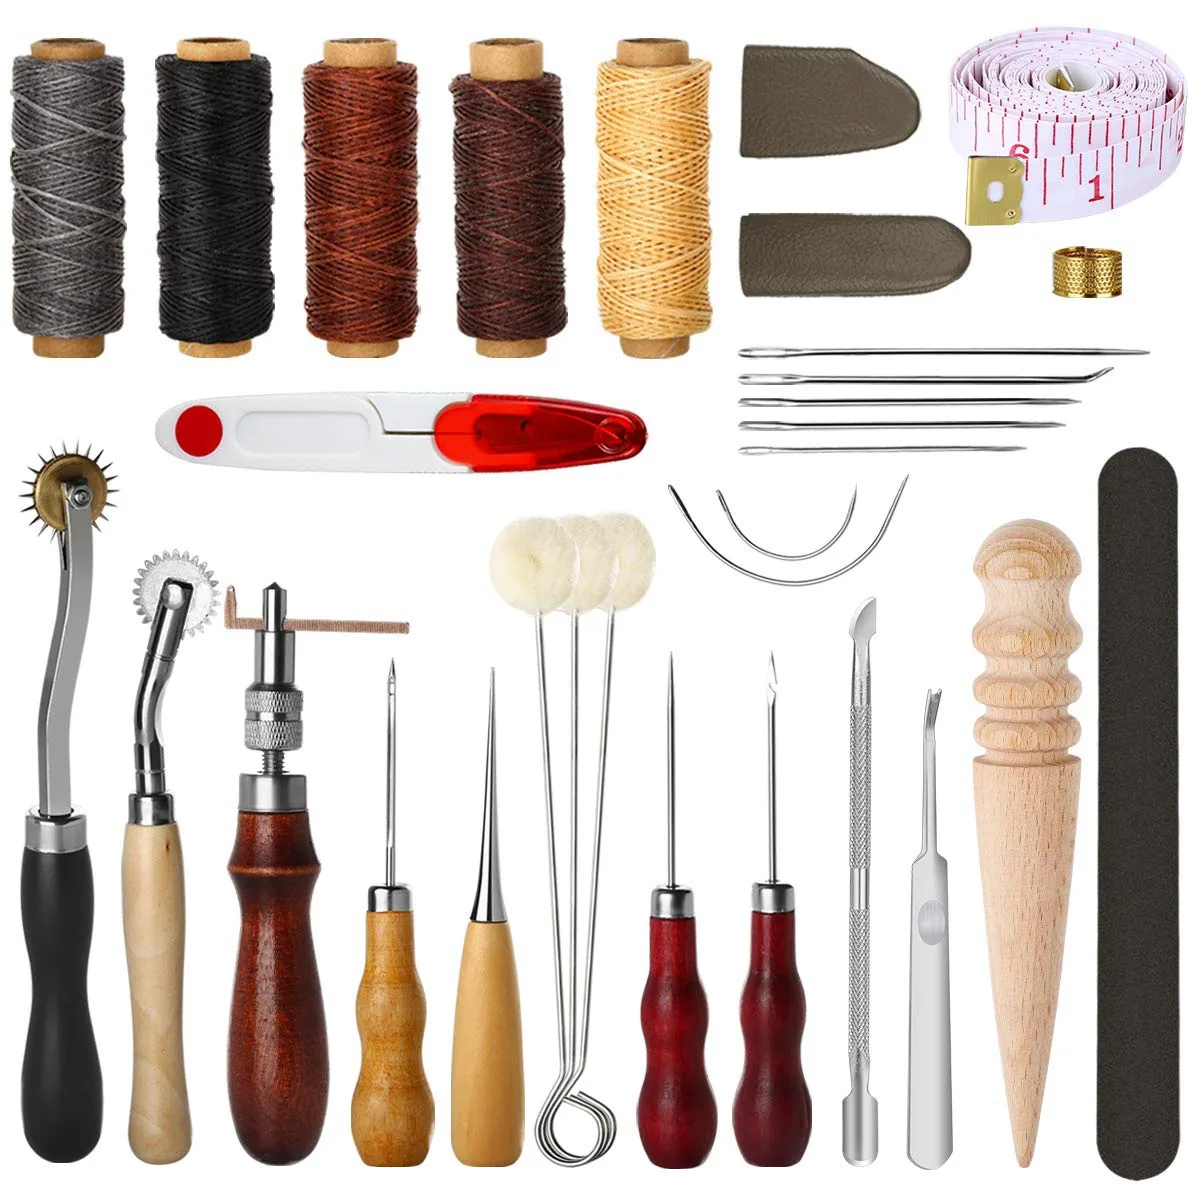 31 шт., инструменты для шитья кожи, инструменты для рукоделия, ручные инструменты для шитья, набор инструментов с наперстями, шило, вощеная нить, наперсток, комплект